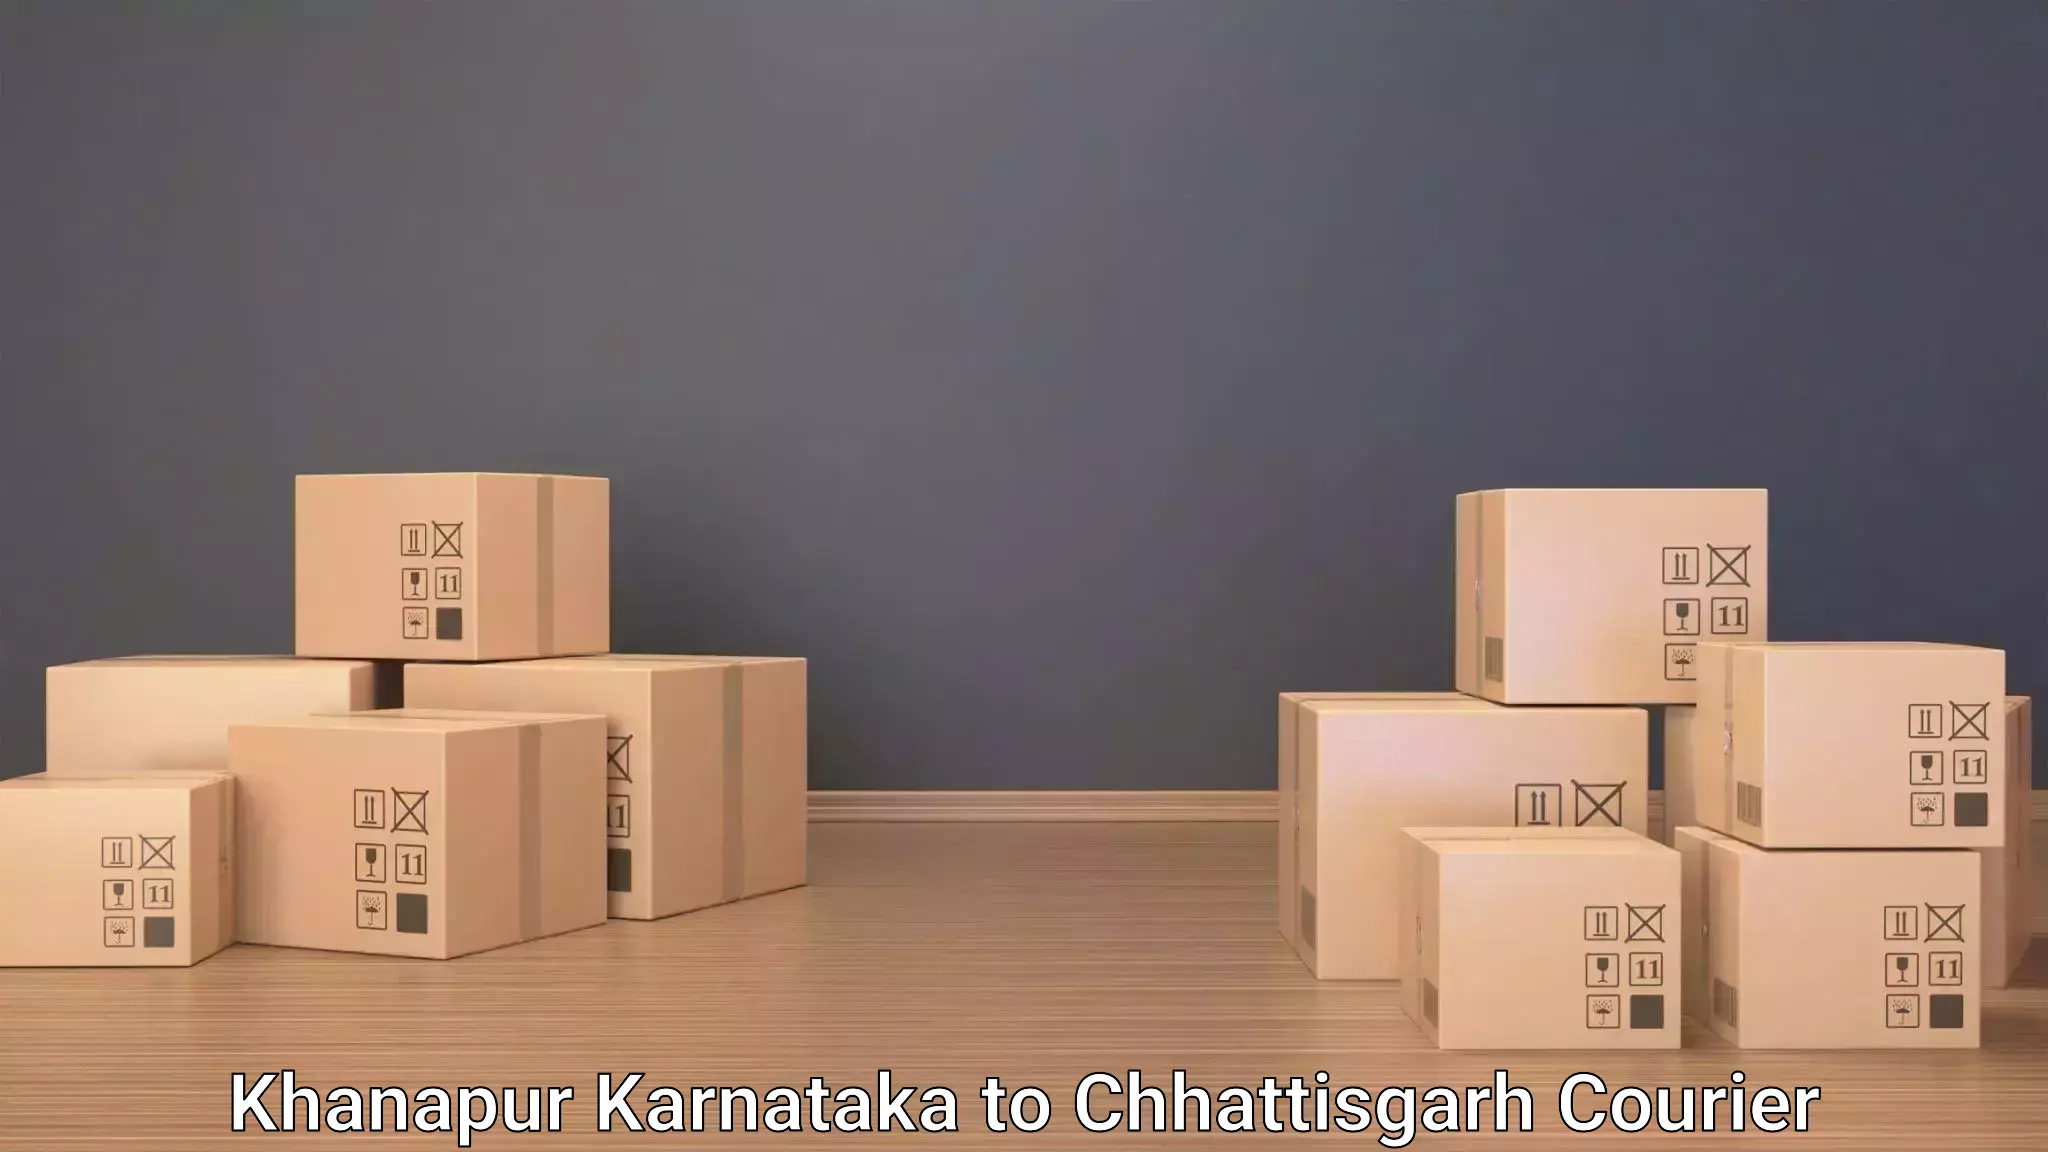 Baggage relocation service Khanapur Karnataka to Bhanupratappur